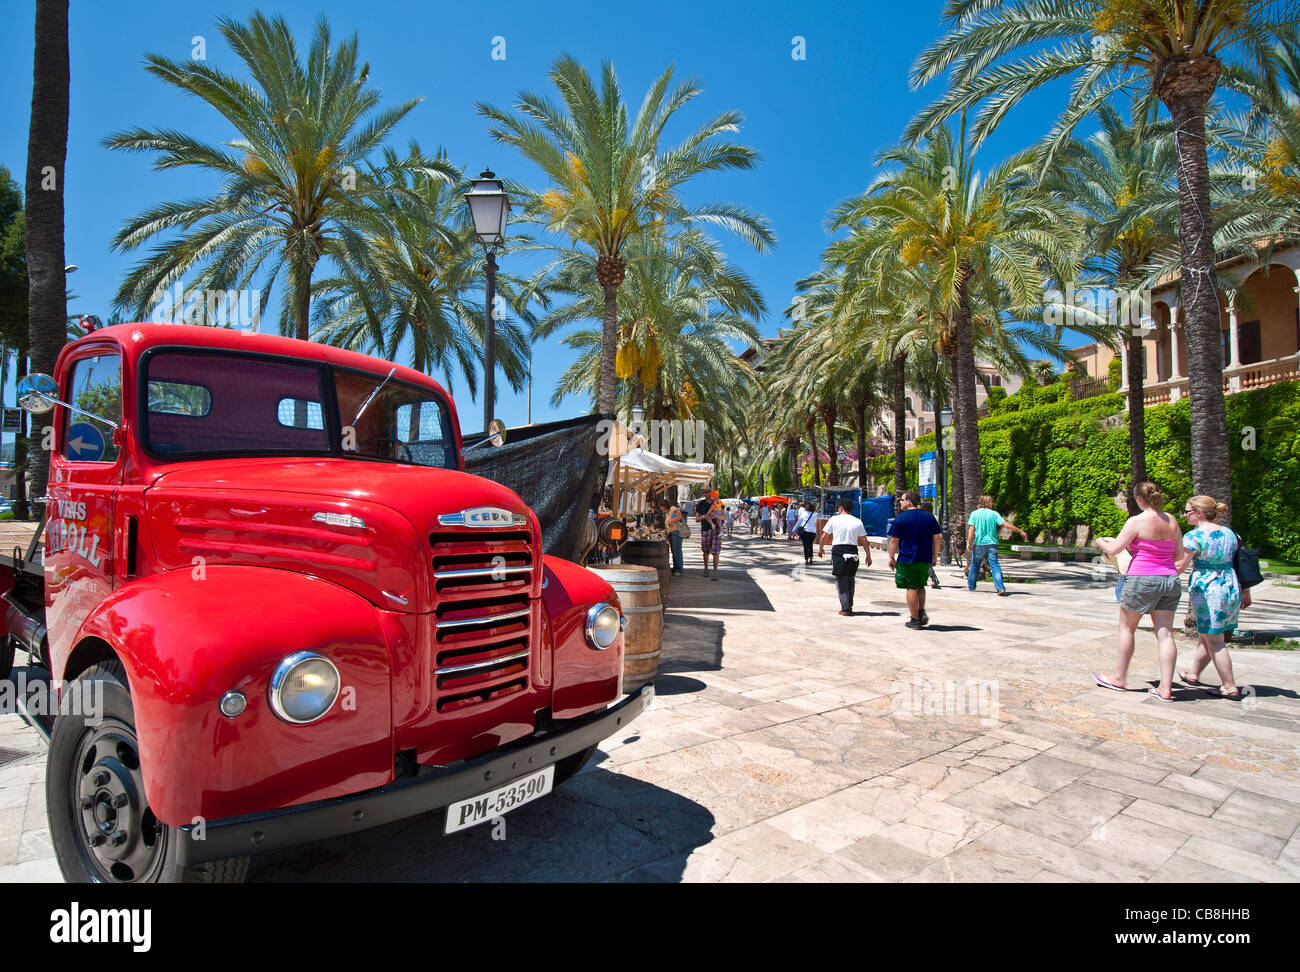 Marché de Palma Espagnol rouge vintage livraison lorry annonçant le vin local et les étals de marché sur Maritimo avec les visiteurs naviguant à Palma de Majorque Espagne Banque D'Images